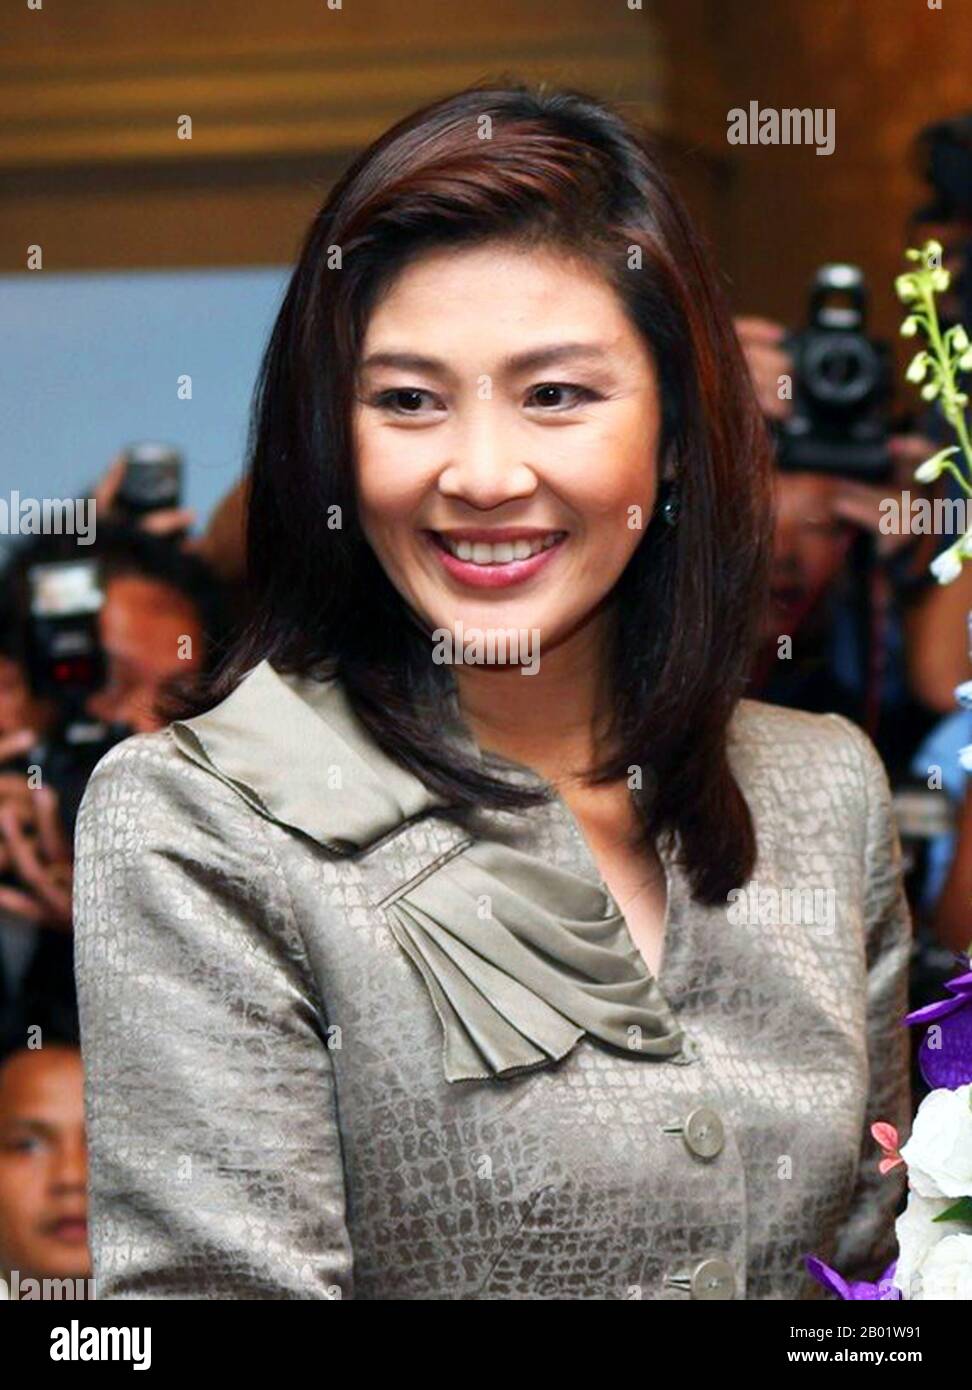 Thaïlande : Yingluck Shinawatra (né le 21 juin 1967), ancien premier ministre thaïlandais (5 août 2011 - 7 mai 2014), à l'ambassade des États-Unis à Bangkok pour le jour de l'indépendance, le 4 juillet 2011. Yingluck Shinawatra, surnommée Pou, est une femme d'affaires thaïlandaise, figure de proue du Parti Pheu Thai et ancienne première ministre thaïlandaise, actuellement en exil après avoir fui le pays après le coup d'État militaire de mai 2014 qui a renversé son gouvernement. Elle est la sœur cadette de l'ancien premier ministre Thaksin Shinawatra, qui a également été renversé par un coup d'État militaire et est parti en exil jusqu'à son retour en 2023. Banque D'Images